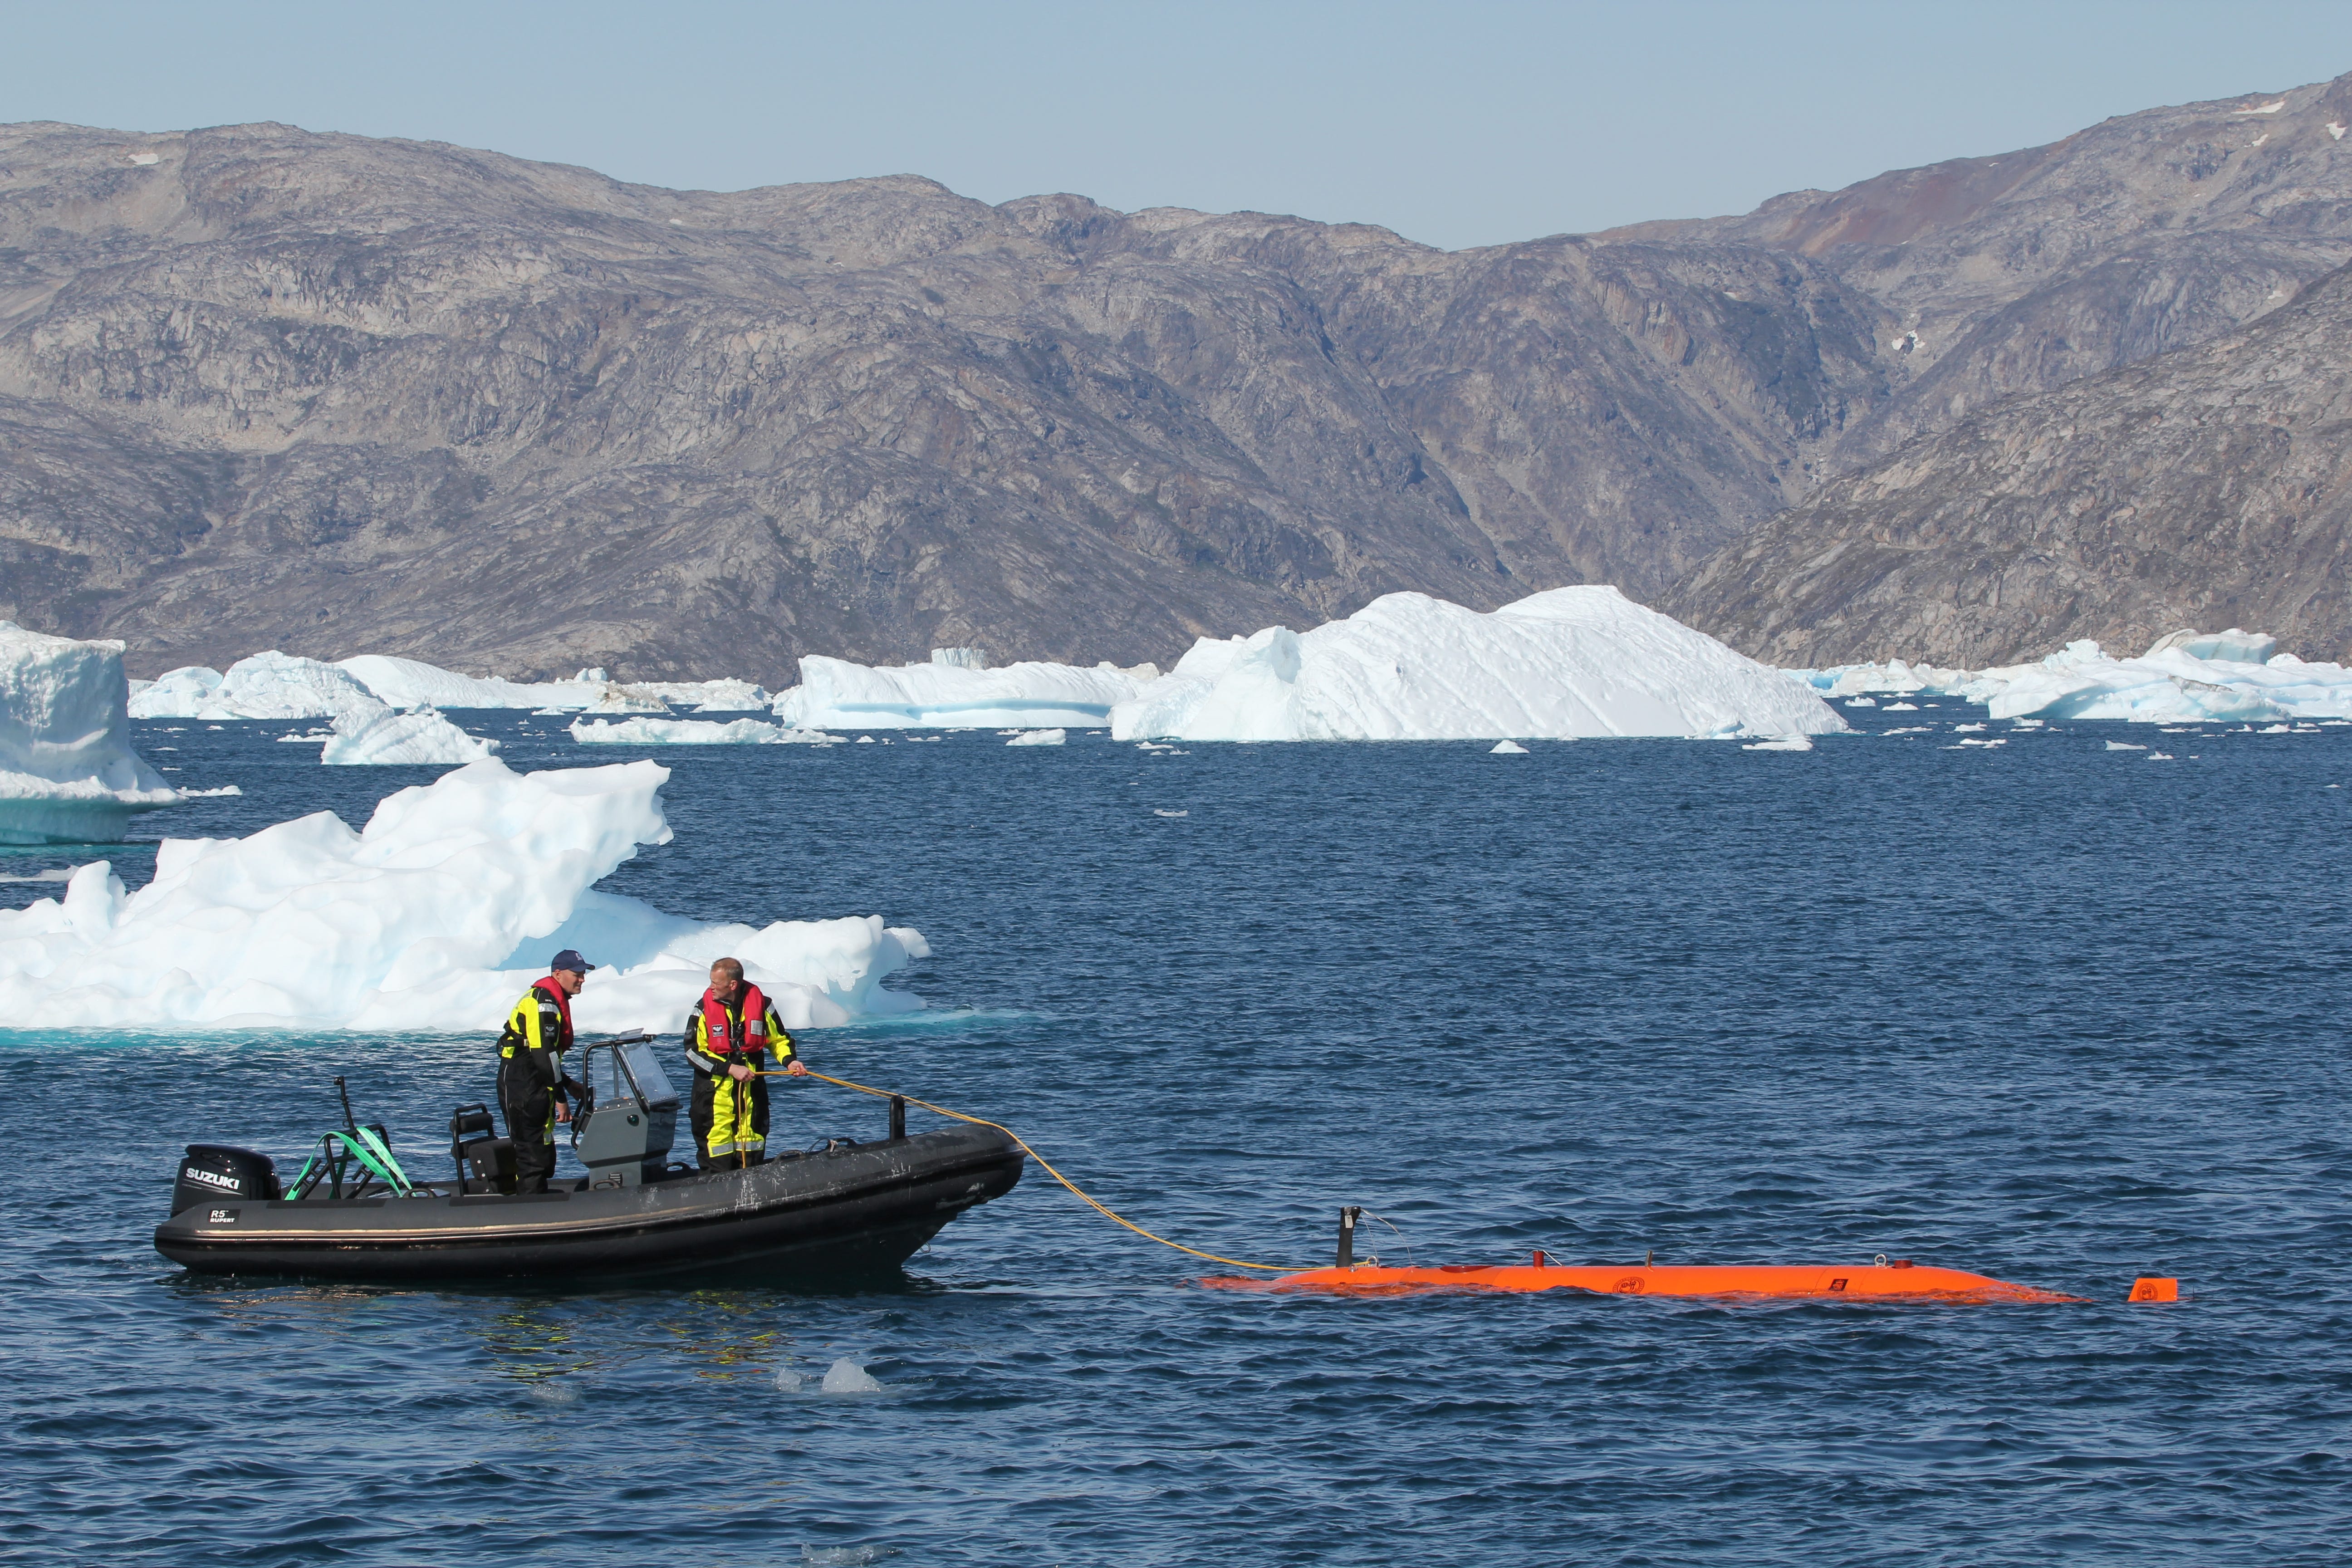 Zwei Personen auf einem Schlauchboot im Meer, ein Seil haltend, das an das Ran-Tauchboot gebunden ist, mit Eis und Bergen im Hintergrund